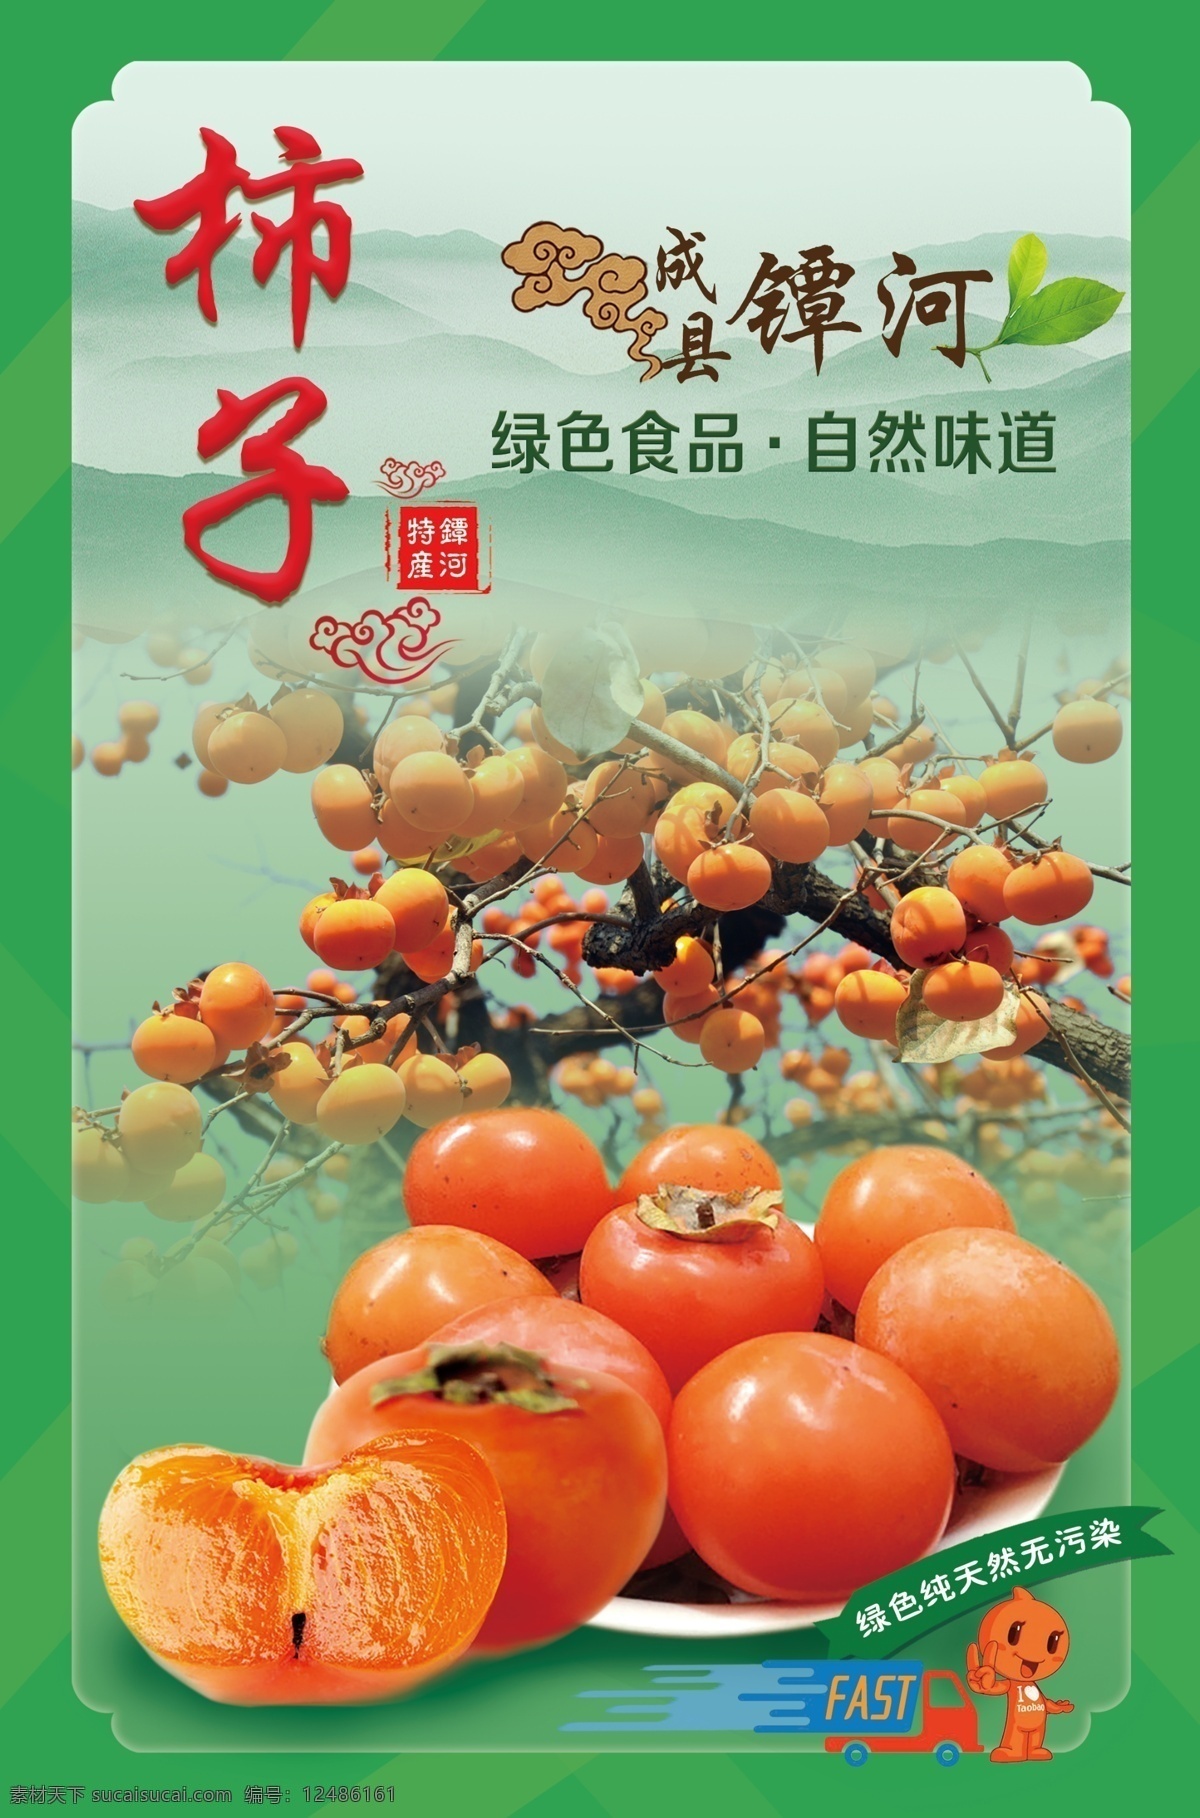 柿子 甜柿子 山柿子 柿子宣传图片 柿子树 成熟的柿子 柿子海报 地域特产